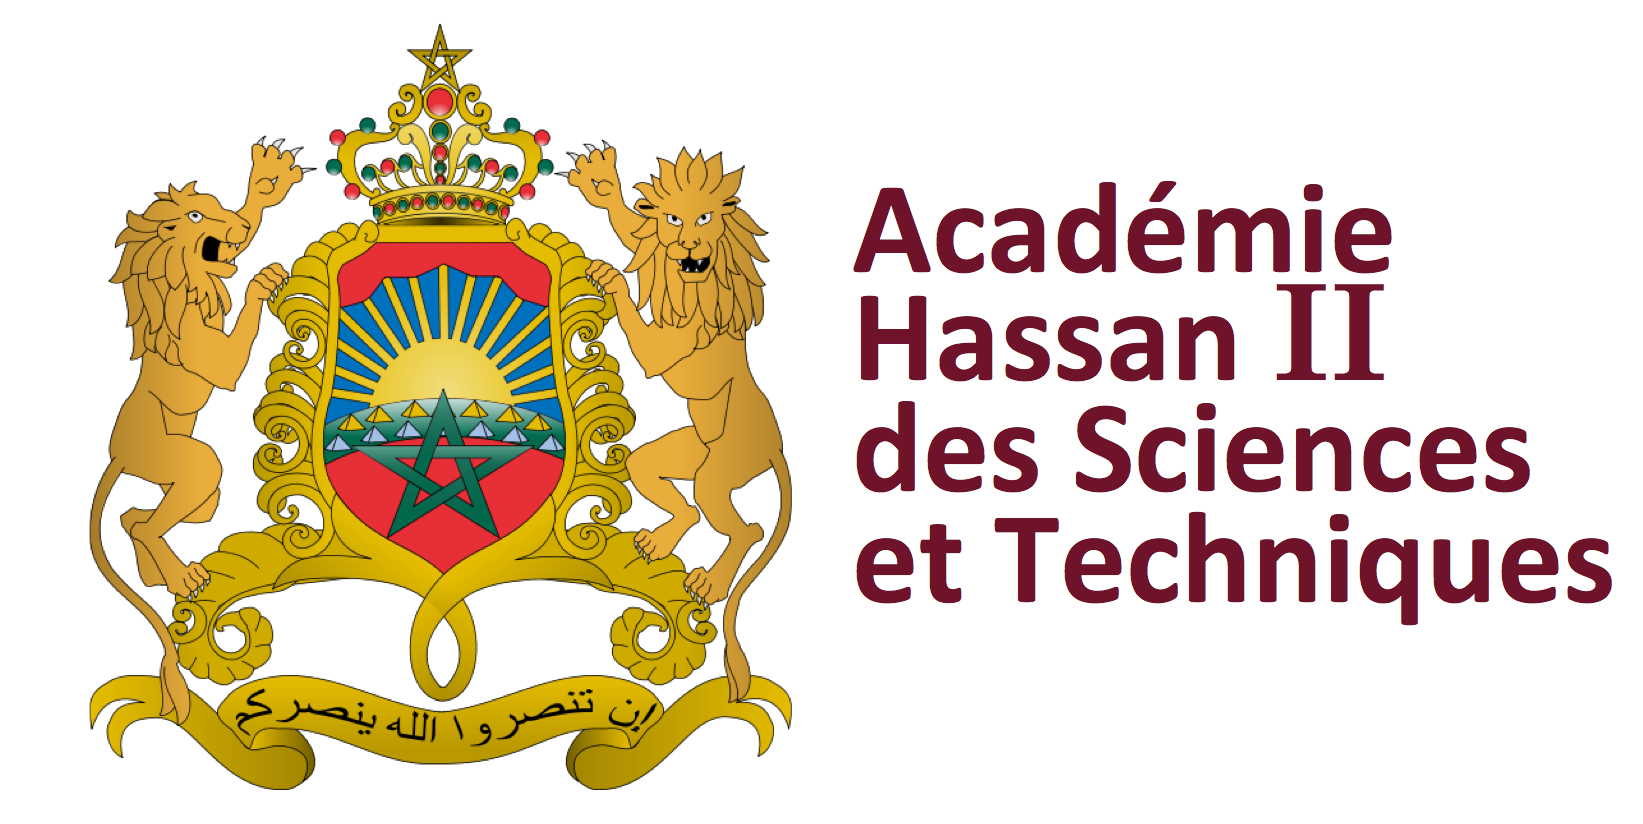 Académie Hassan II des sciences et techniques